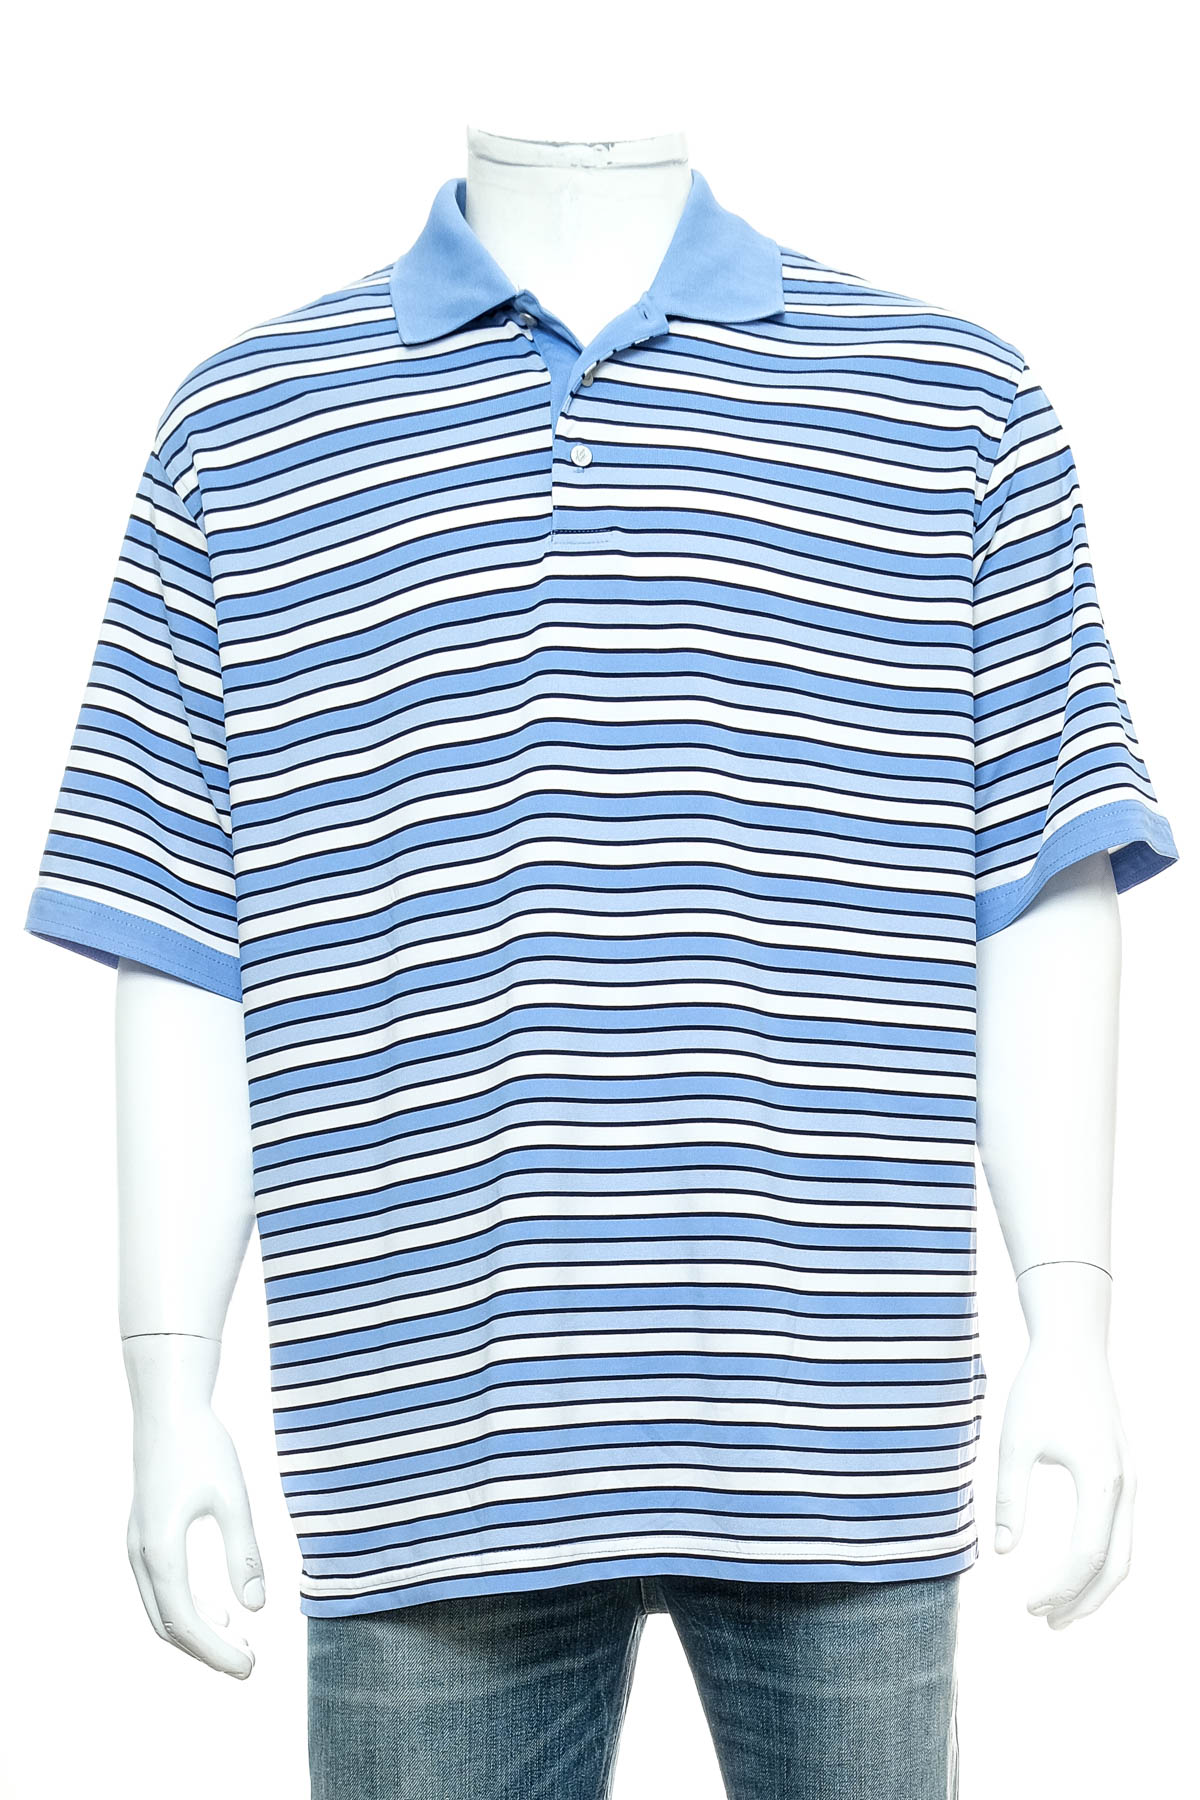 Αντρική μπλούζα - Bolle golf - 0